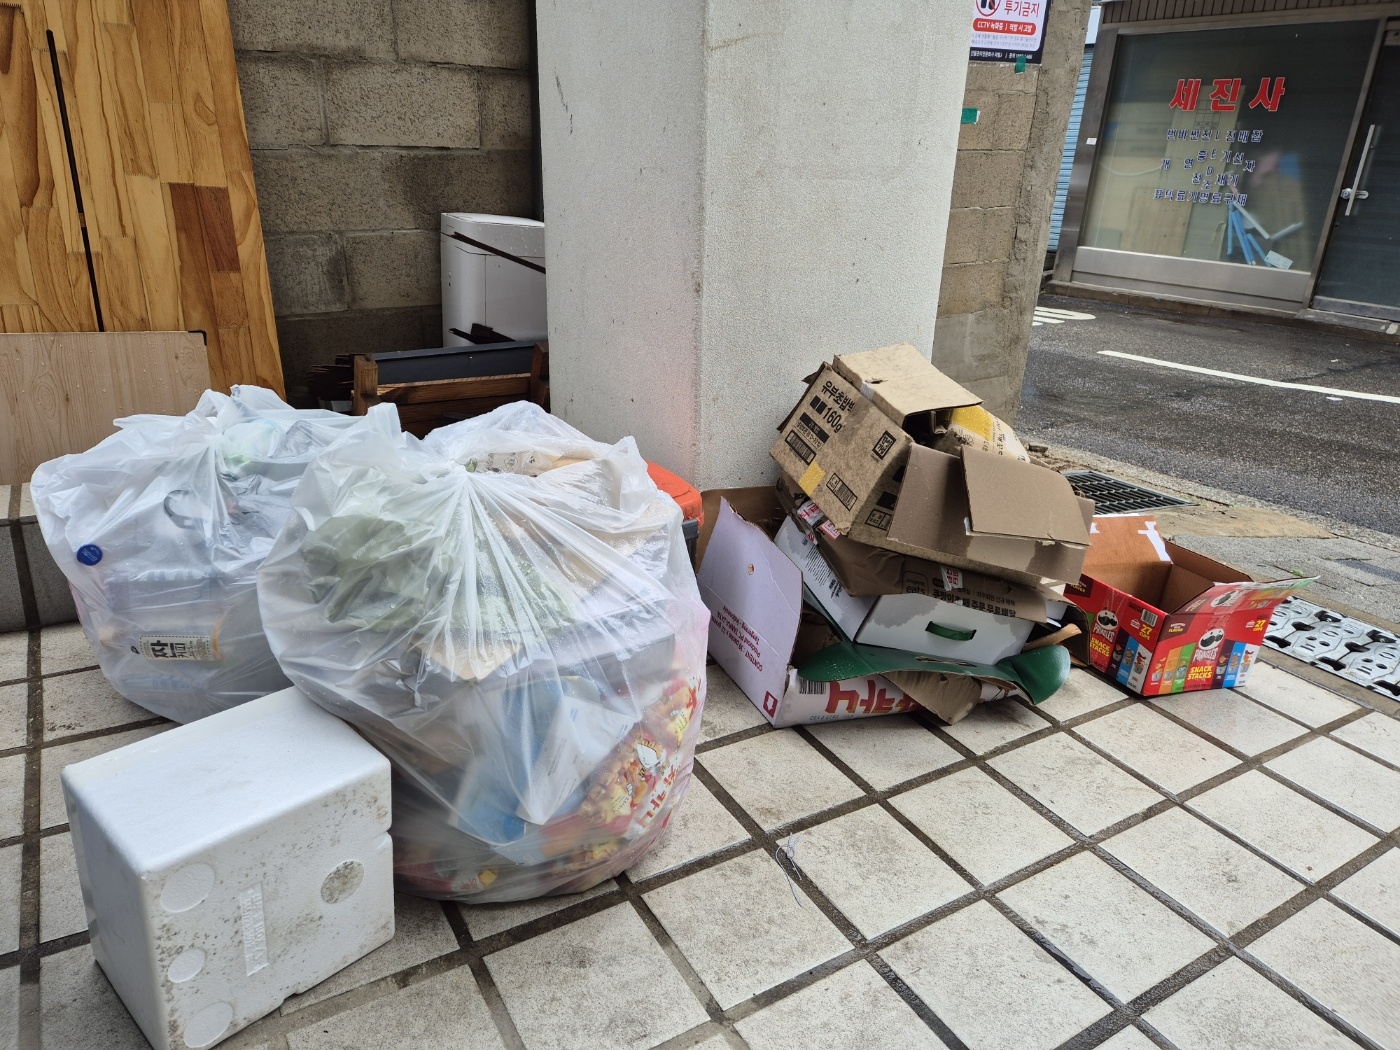 어린이날 연휴 마지막 날인 6일 서울의 한 주택가 앞에 캔과 페트병 등 재활용 쓰레기가 담겨 있는 비닐봉지와 박스, 스티로폼이 길바닥에 나뒹굴고 있다.